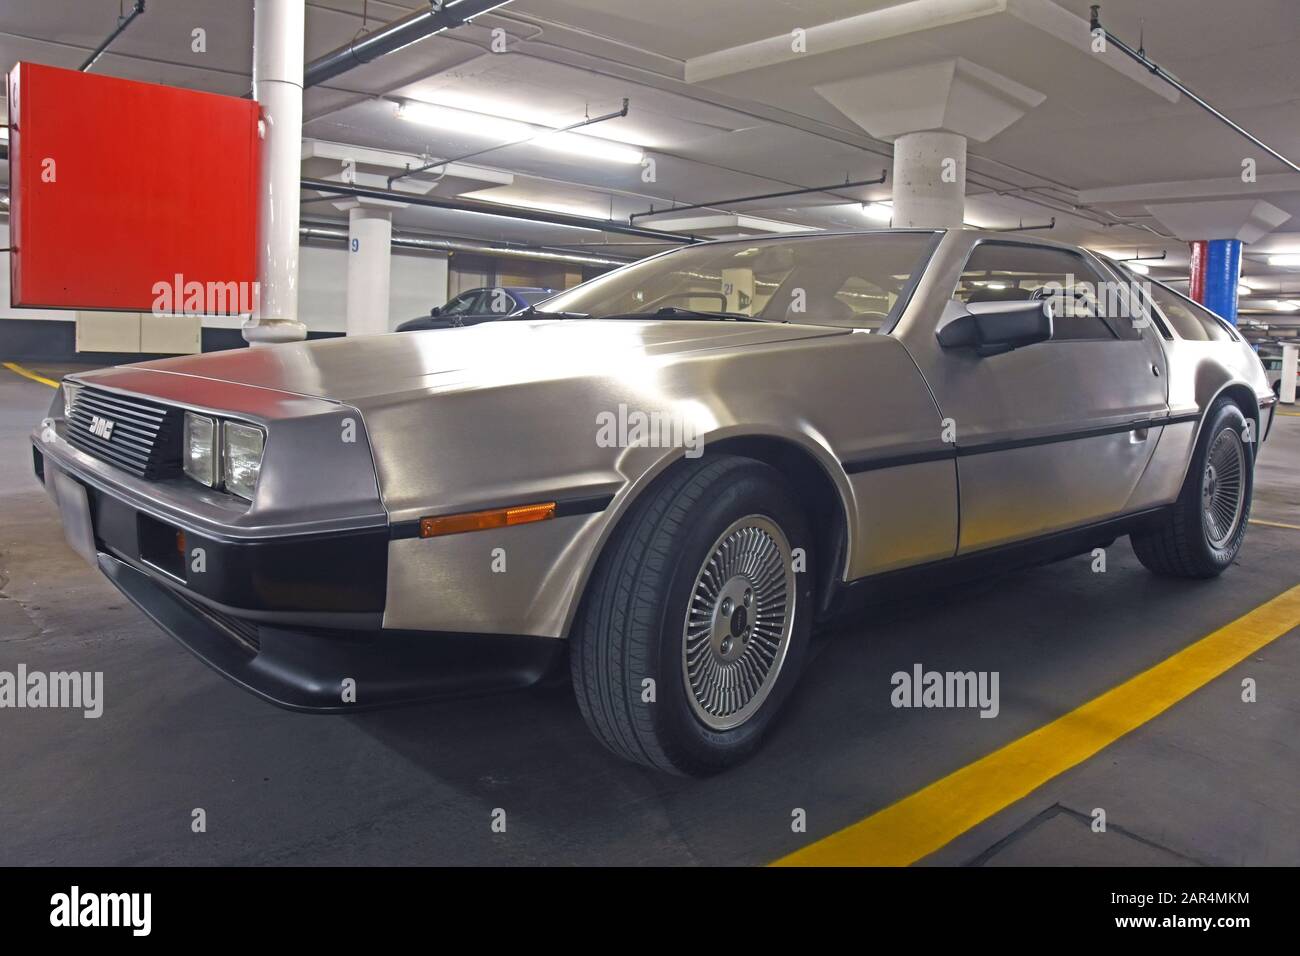 DeLorean DMC-12 Back to the Future Car Stock Photo